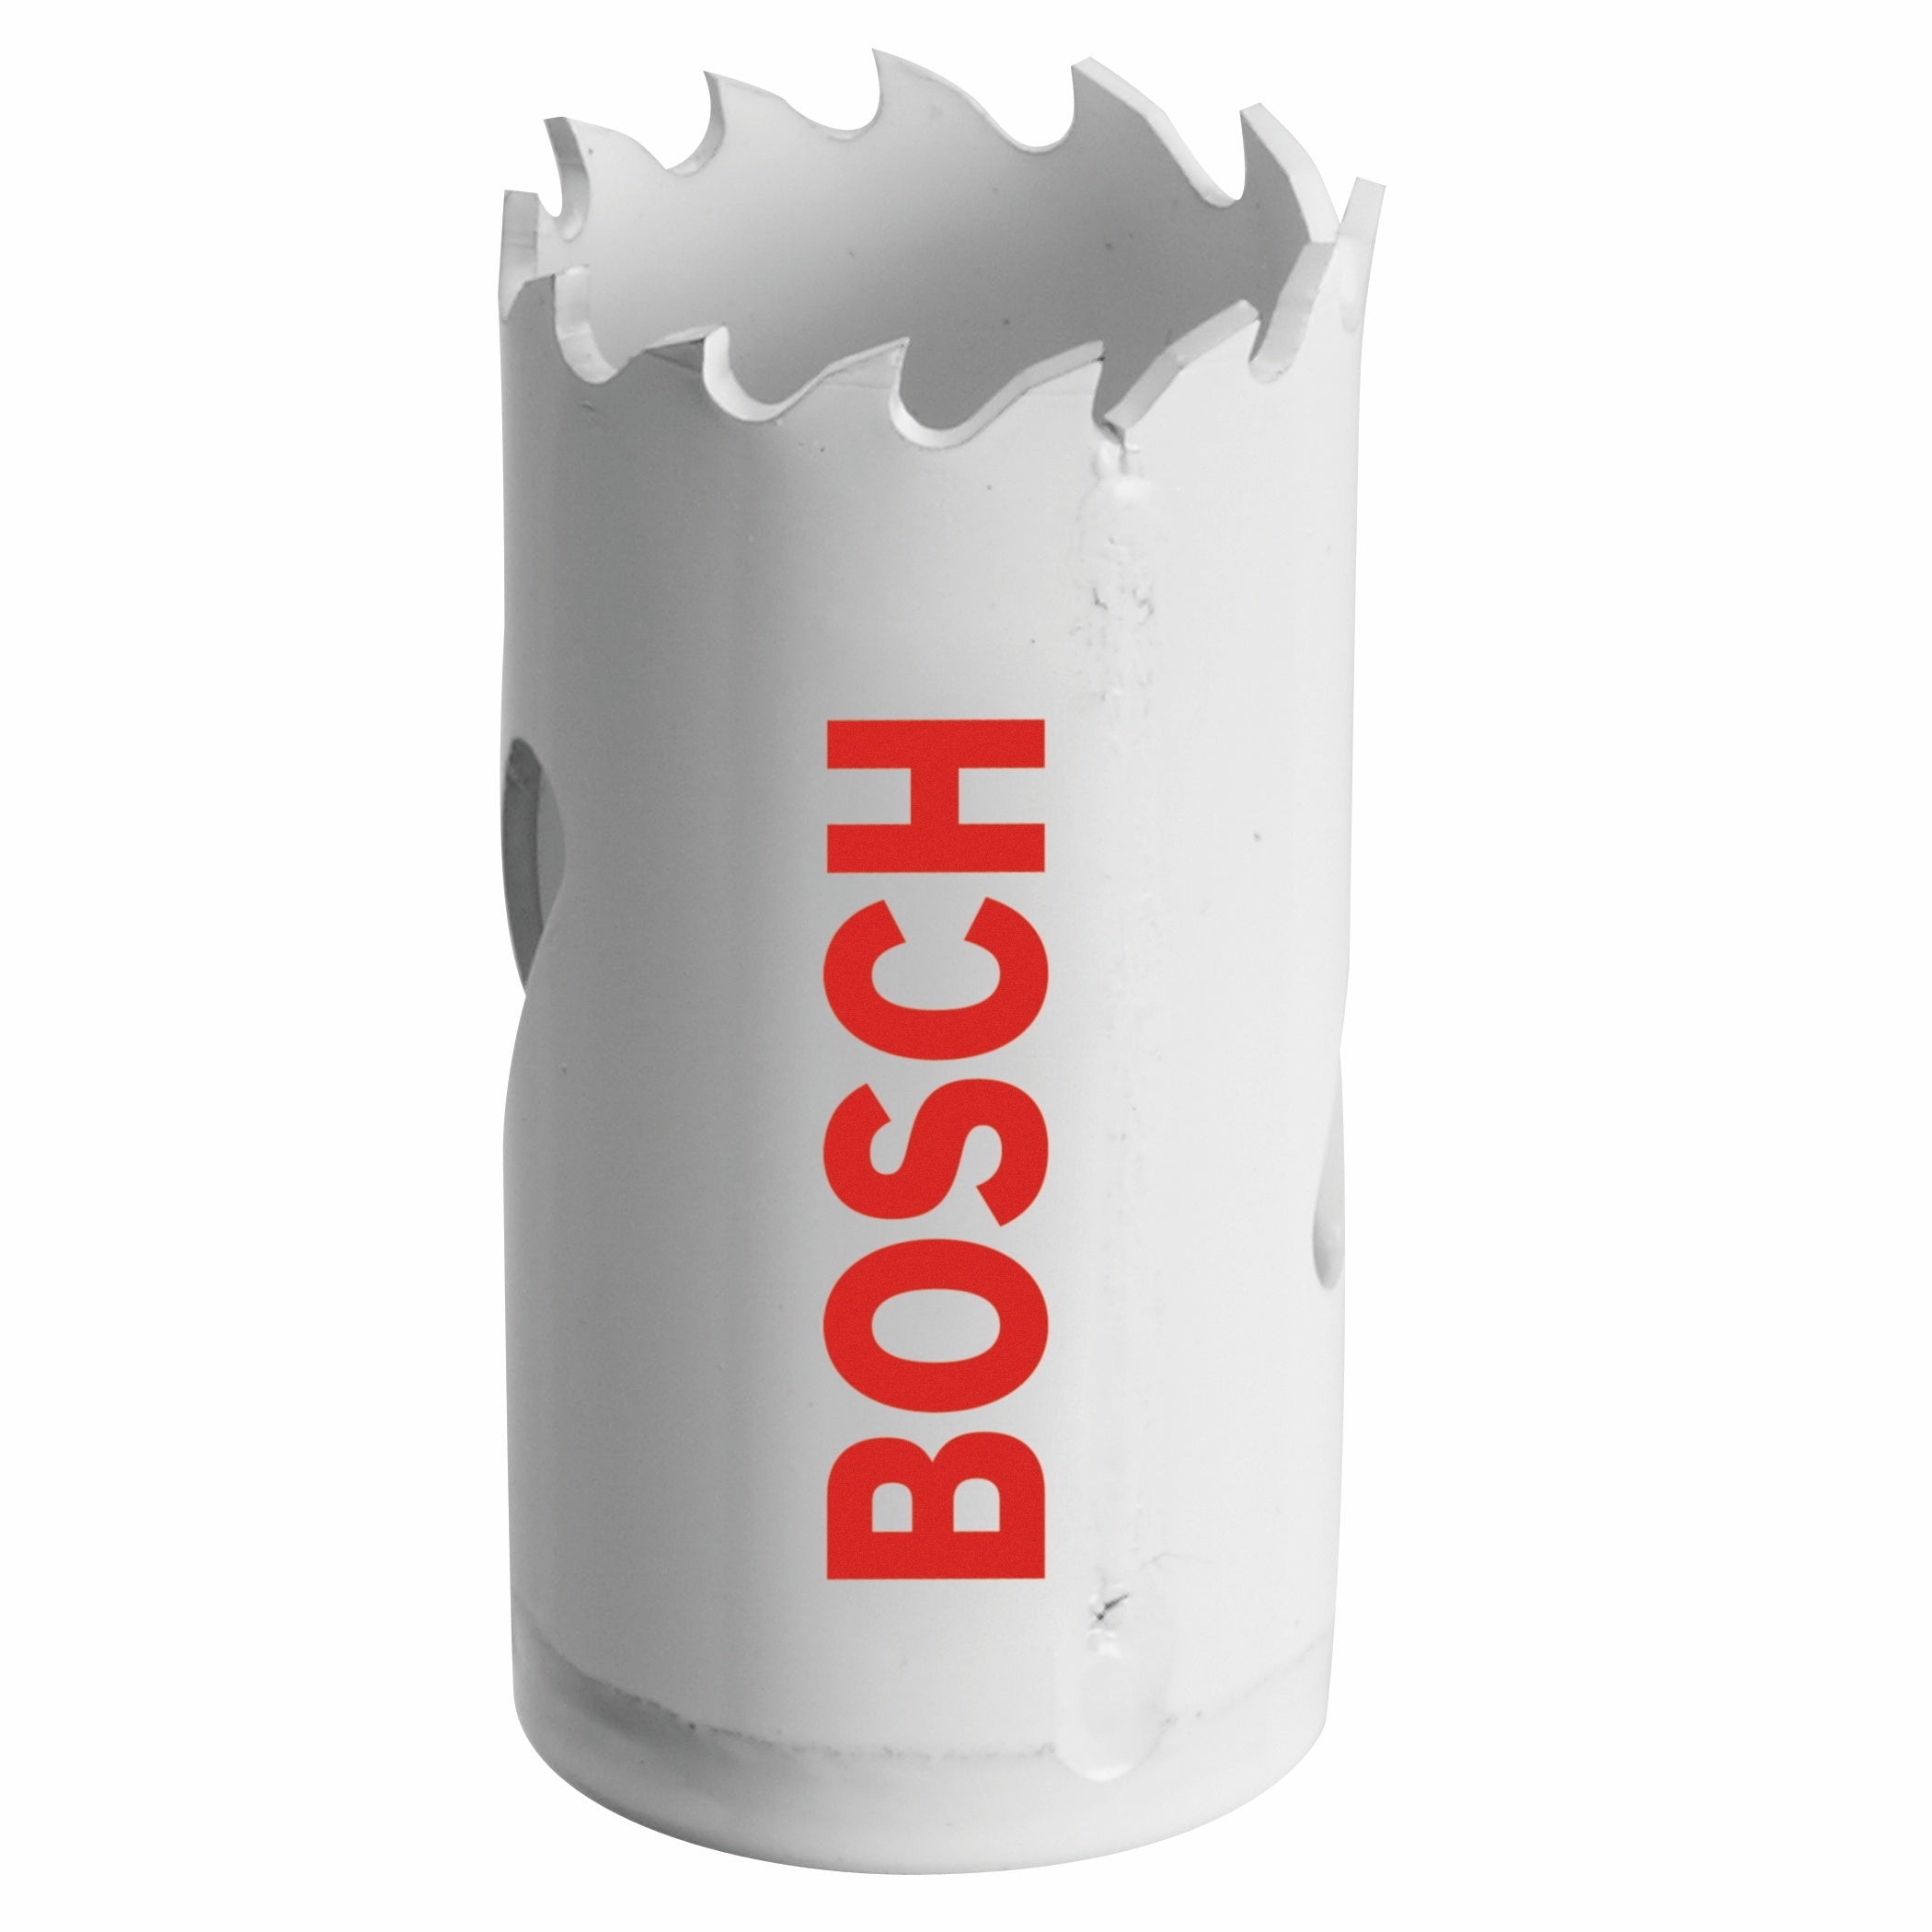 Bosch, BOSCH 1-1/16" Bi-Metal Hole Saw